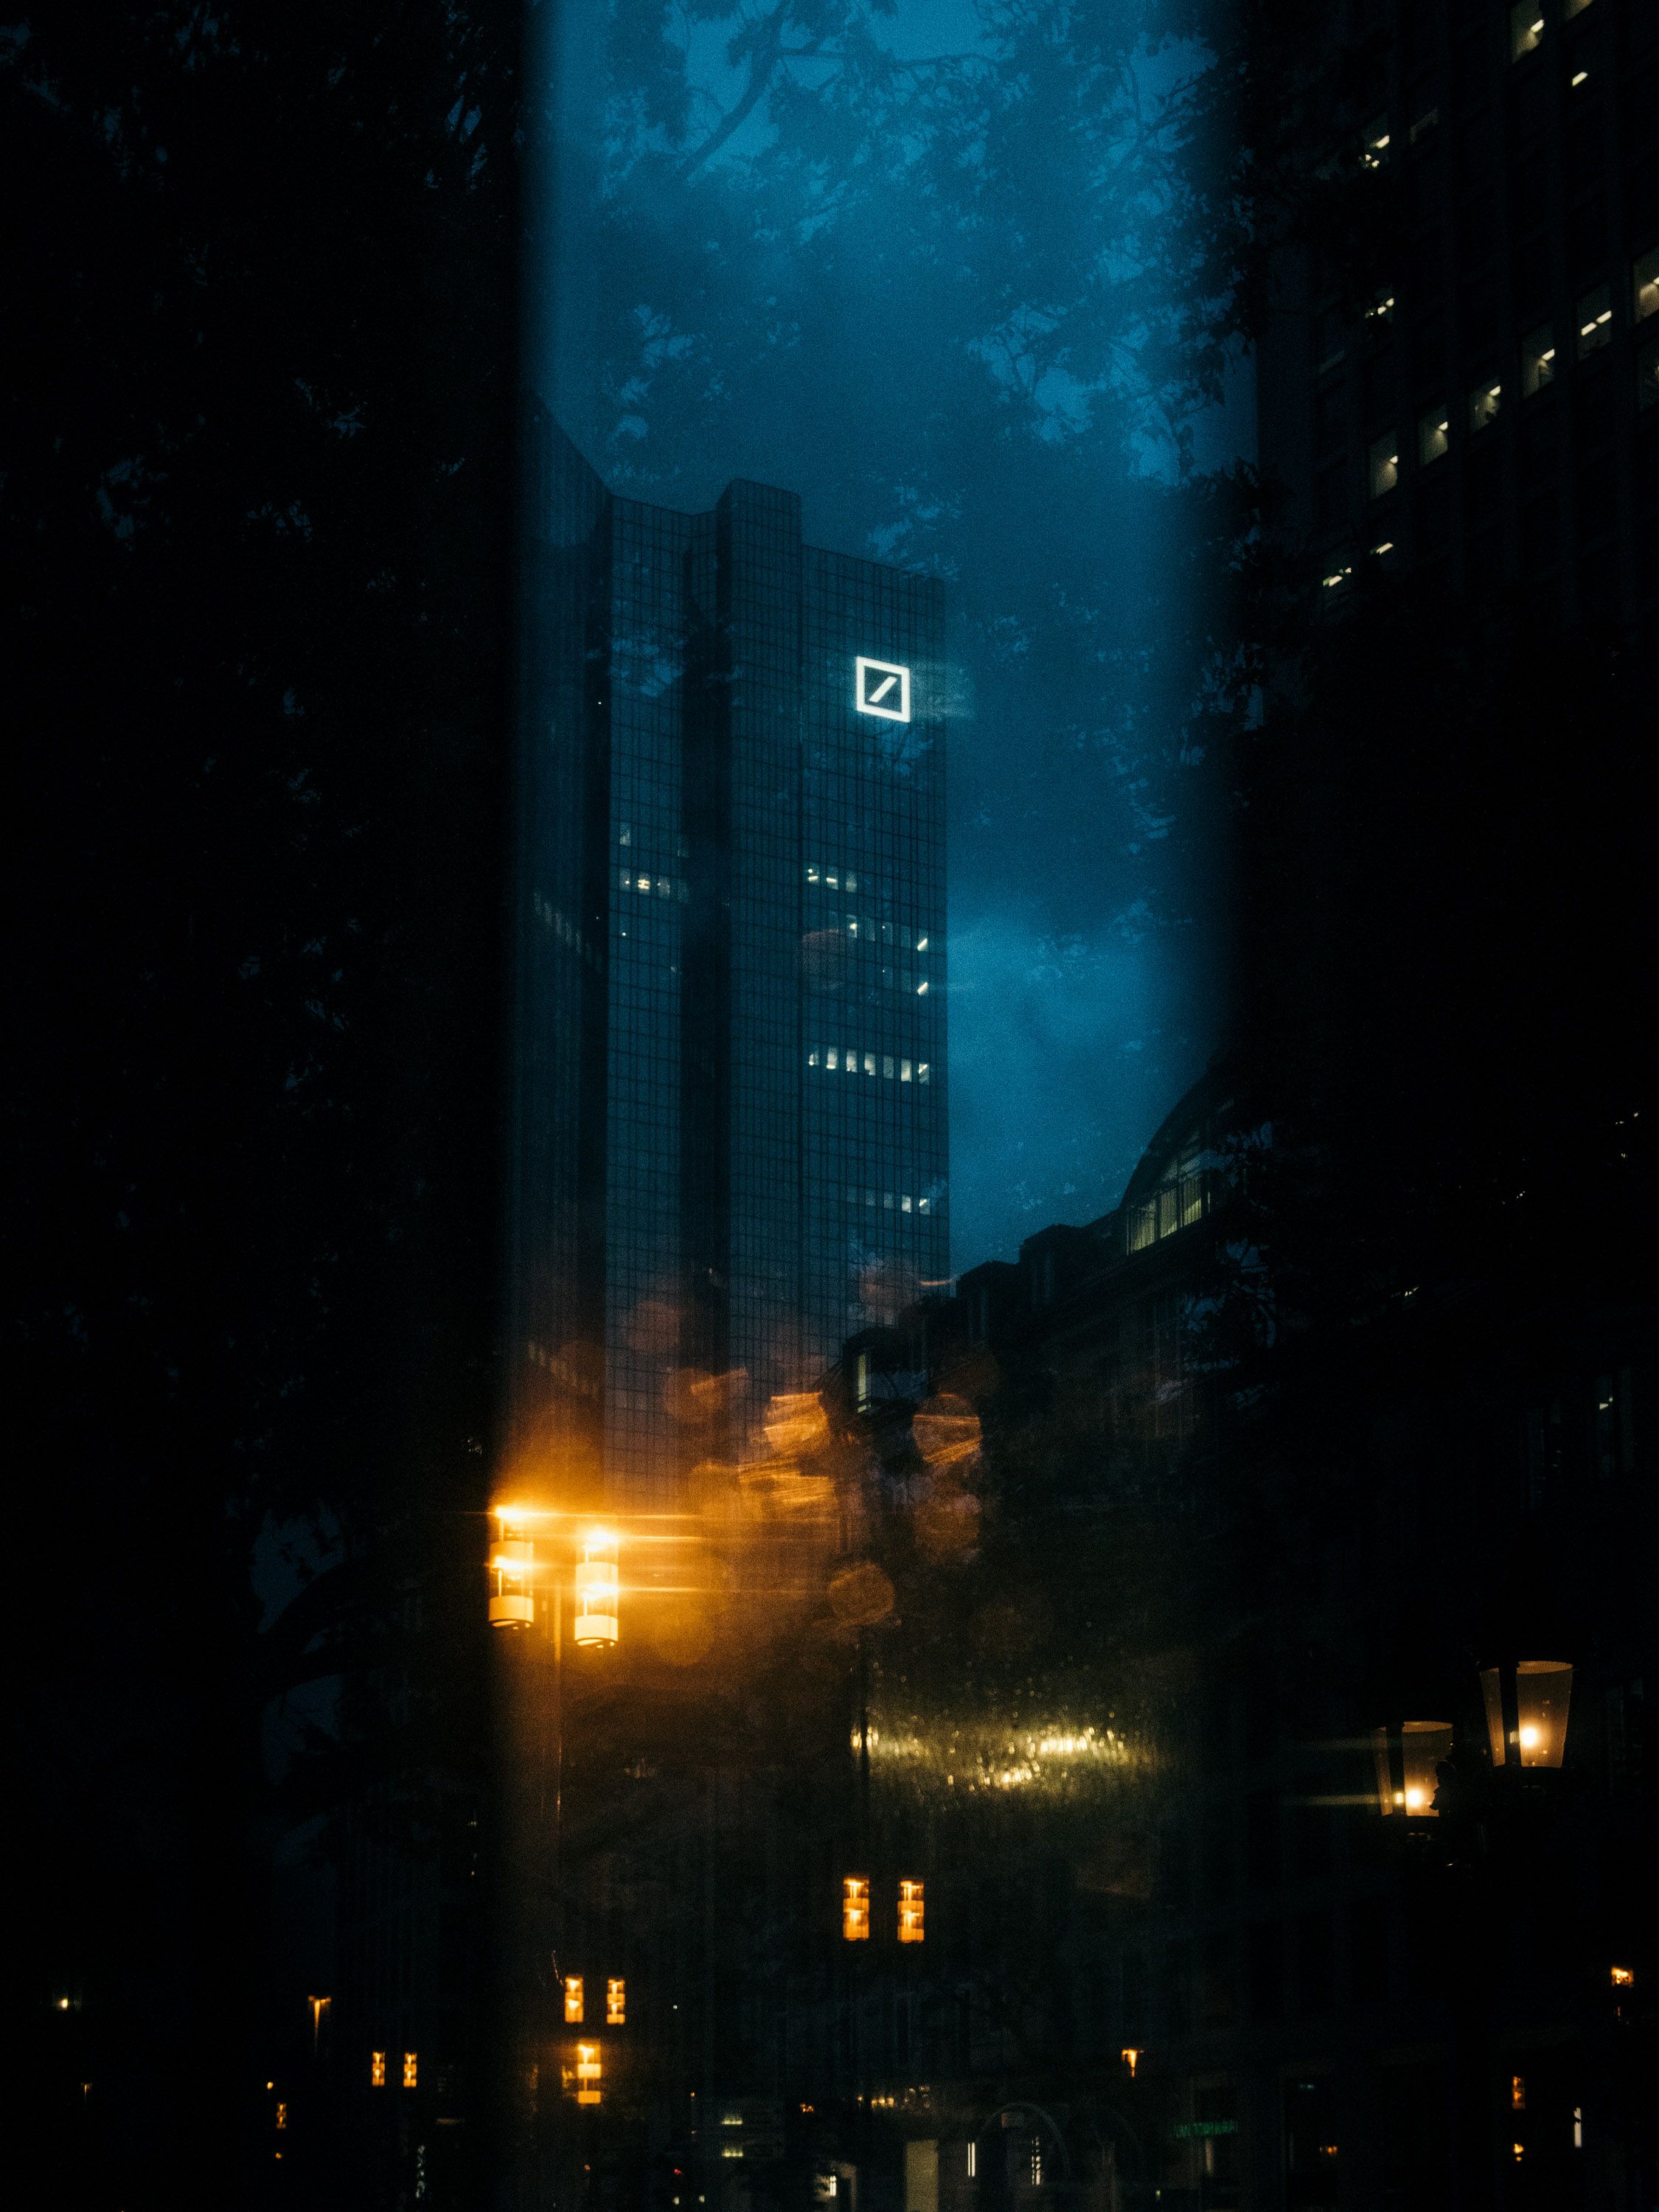  New York Bei Nacht Hintergrundbild 2250x3000. ext: Deutsche Bank // New York Times